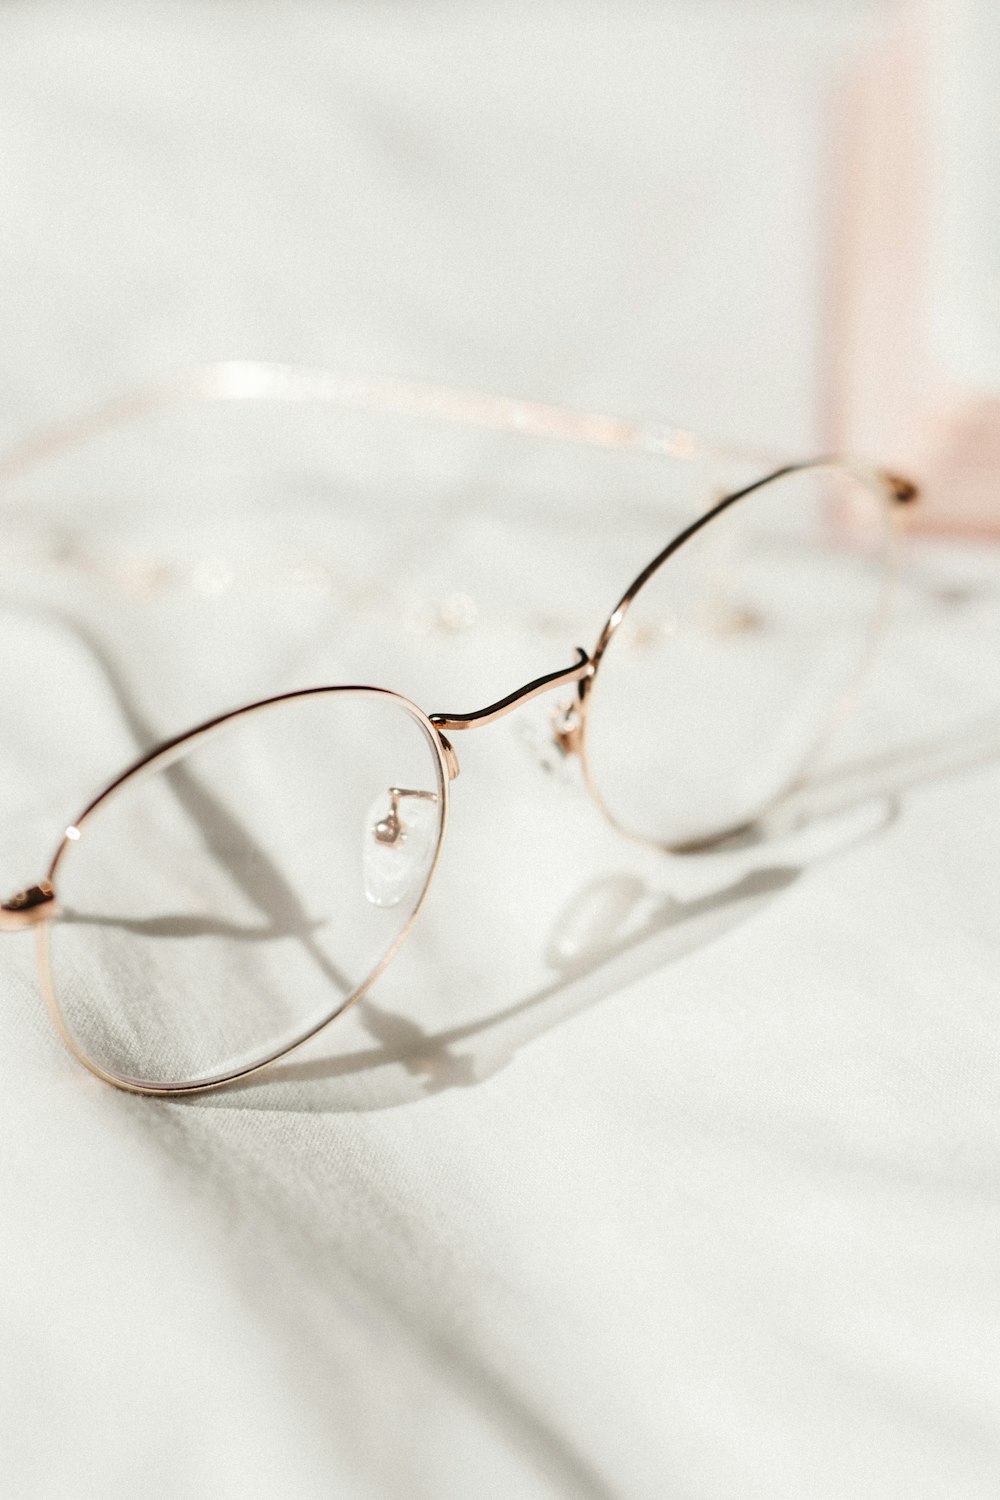 silver framed eyeglasses on white textile